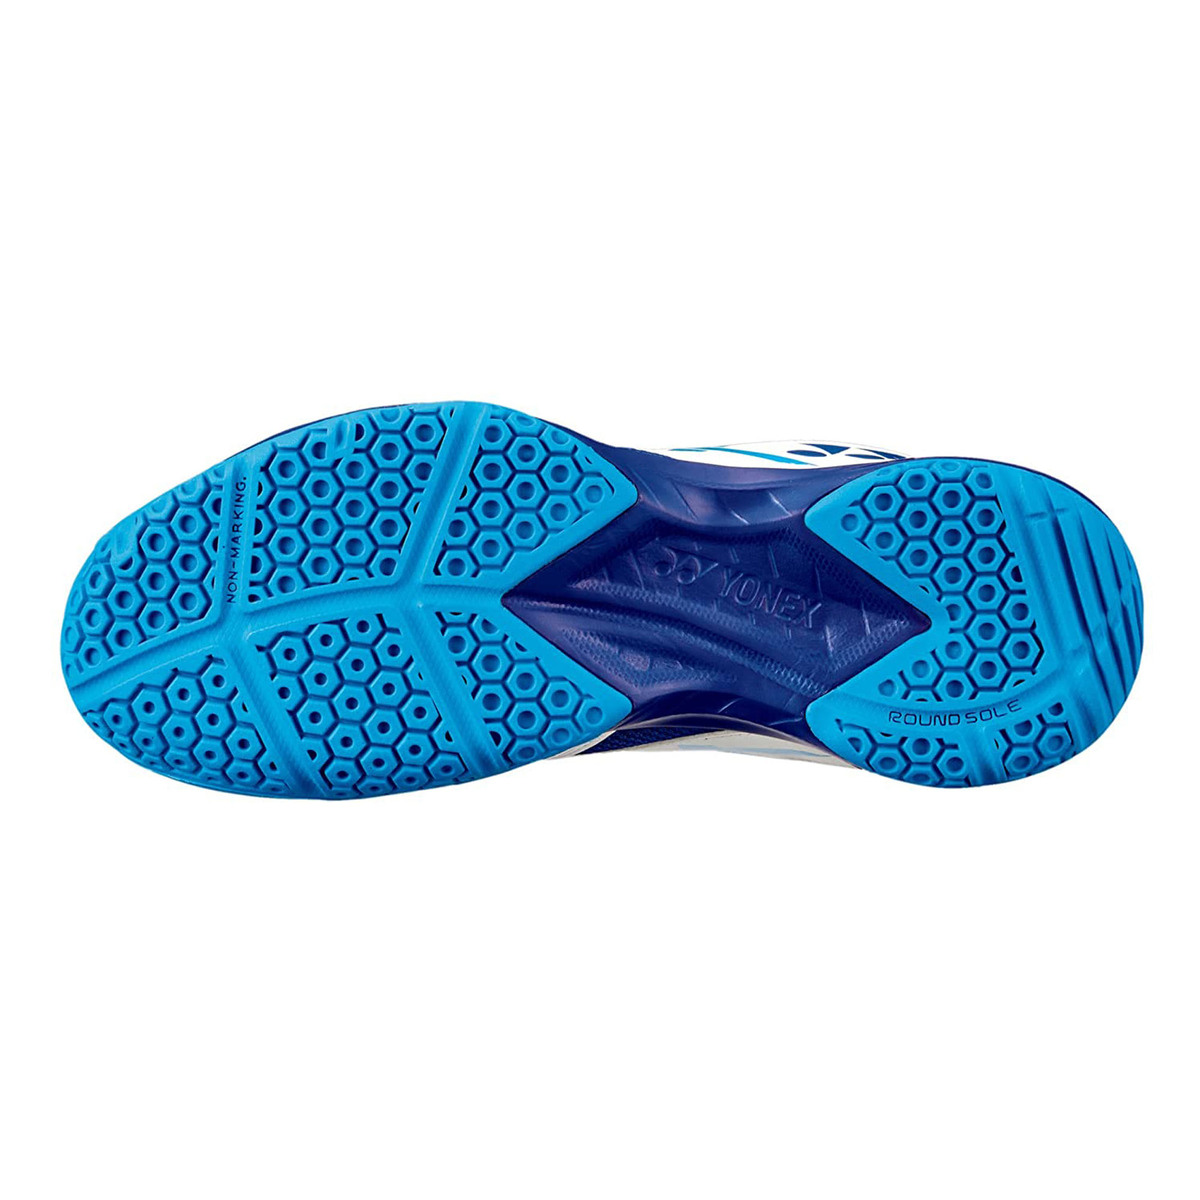 يونيكس حذاء تنس الريشة للرجال، SHB39EX، أبيض/أزرق، 40